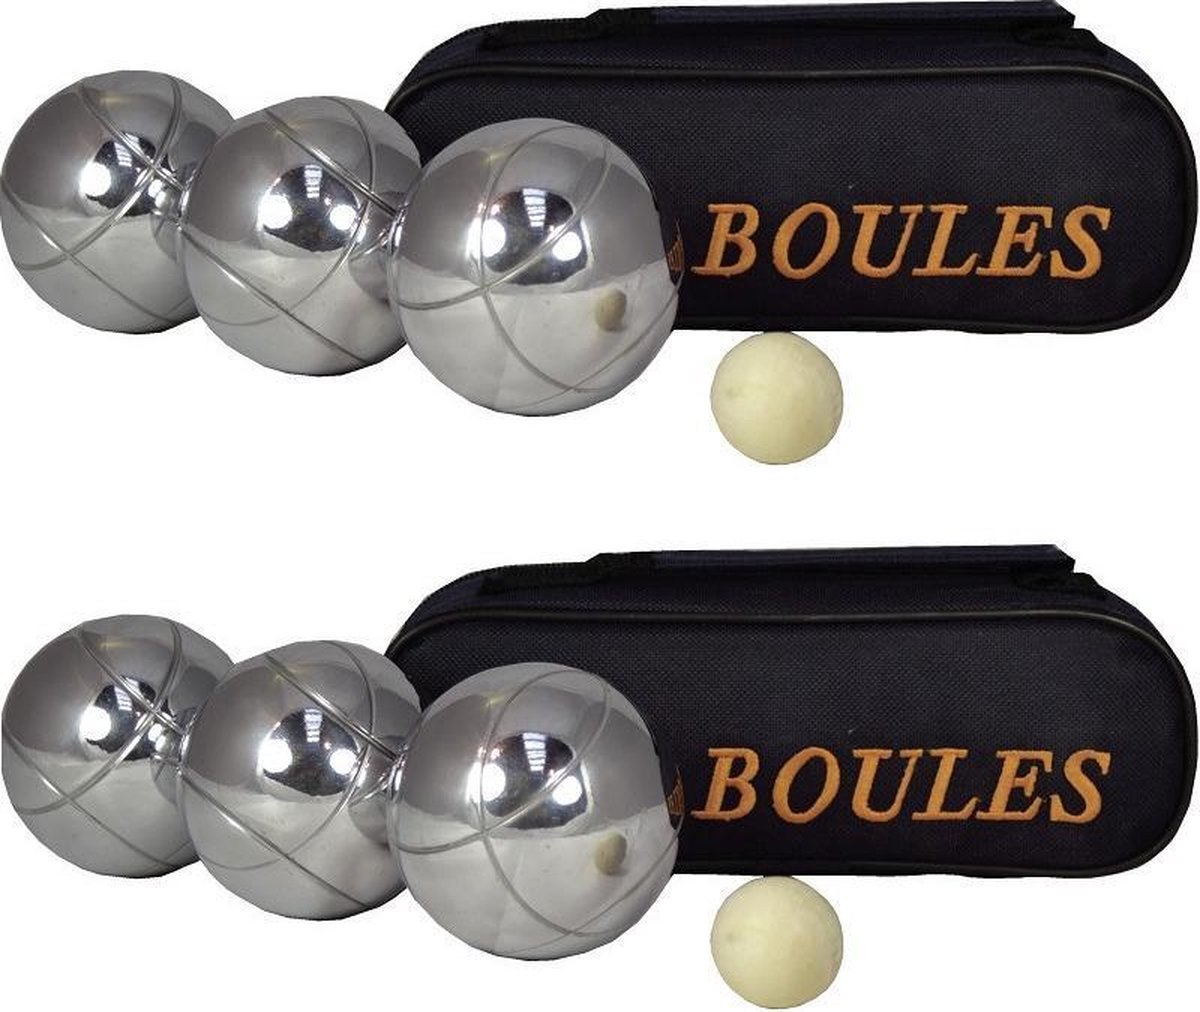 2x Jeu de boules sets 3 ballen/1 but in draagtas - Kaatsbal - Petanque - Cochonnette - Boulen - Sportief/actief buitenspeelgoed - Merkloos